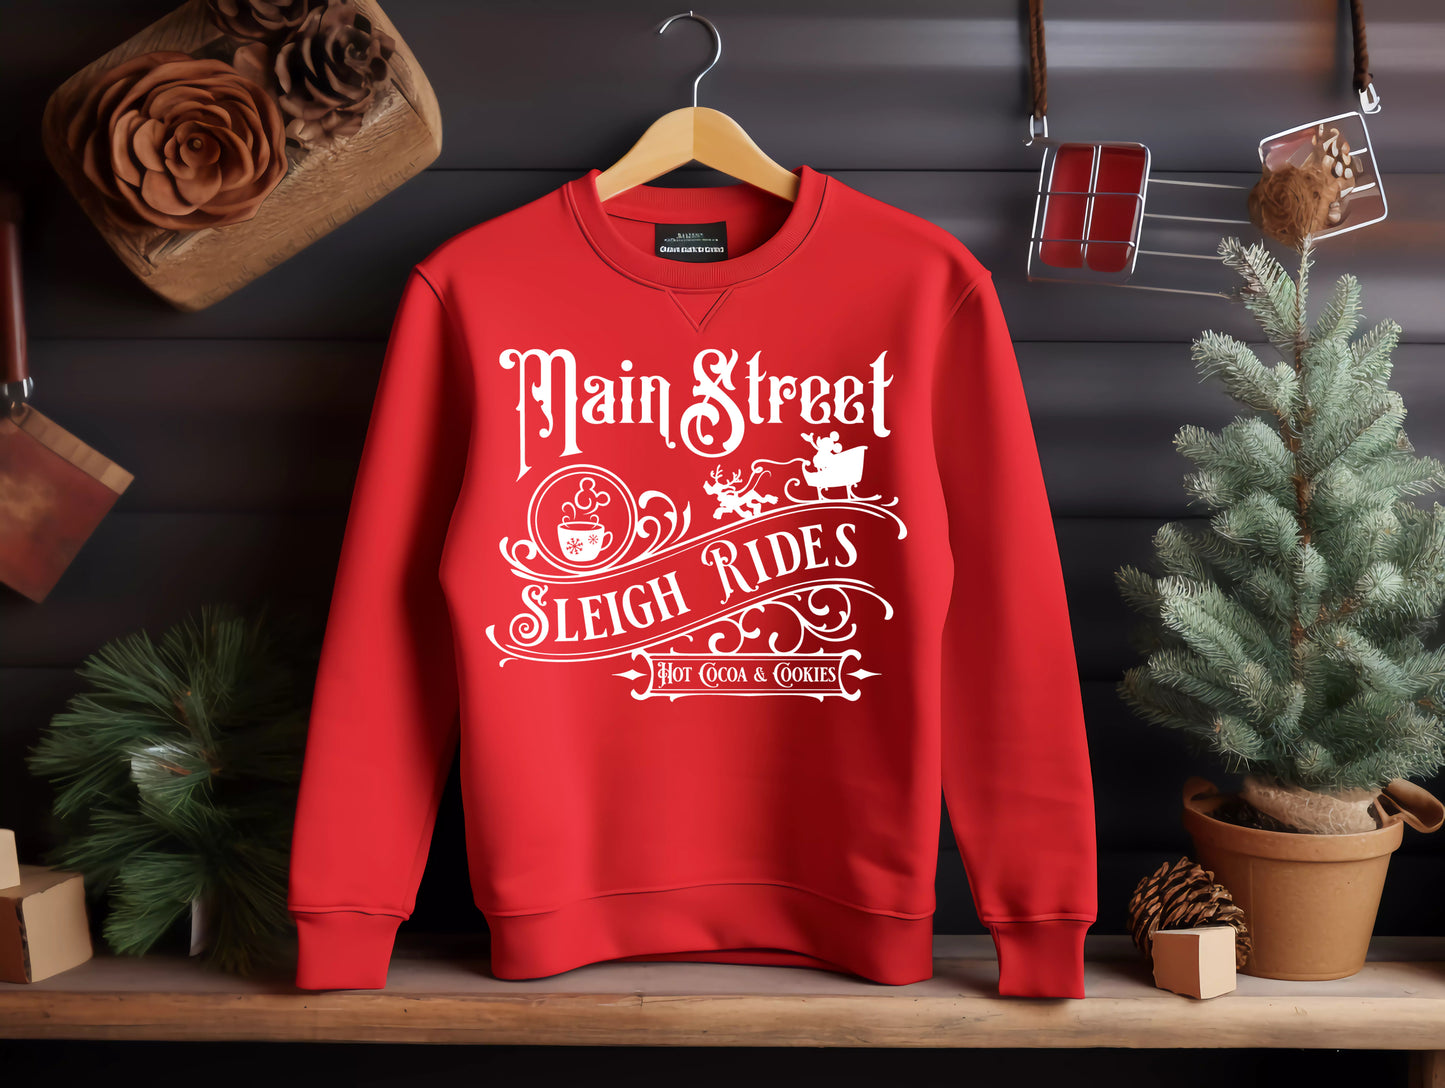 Main Street sleigh rides